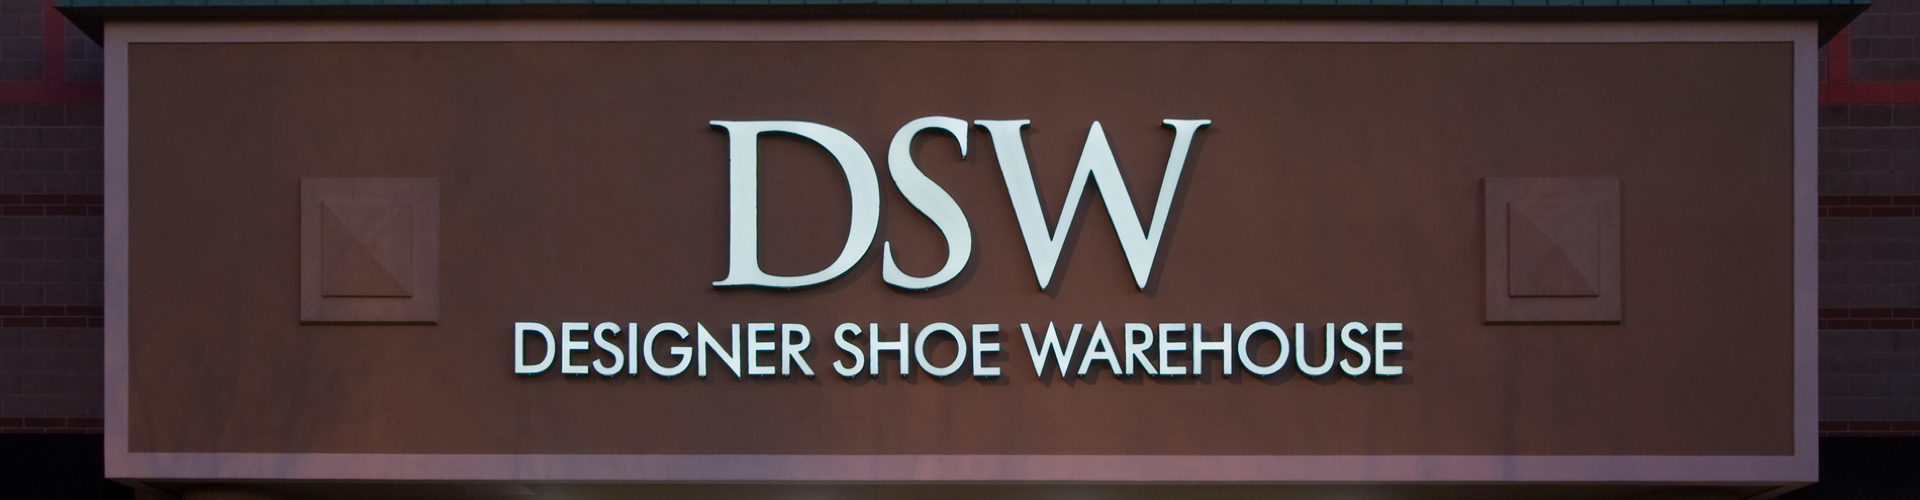 Dsw-header